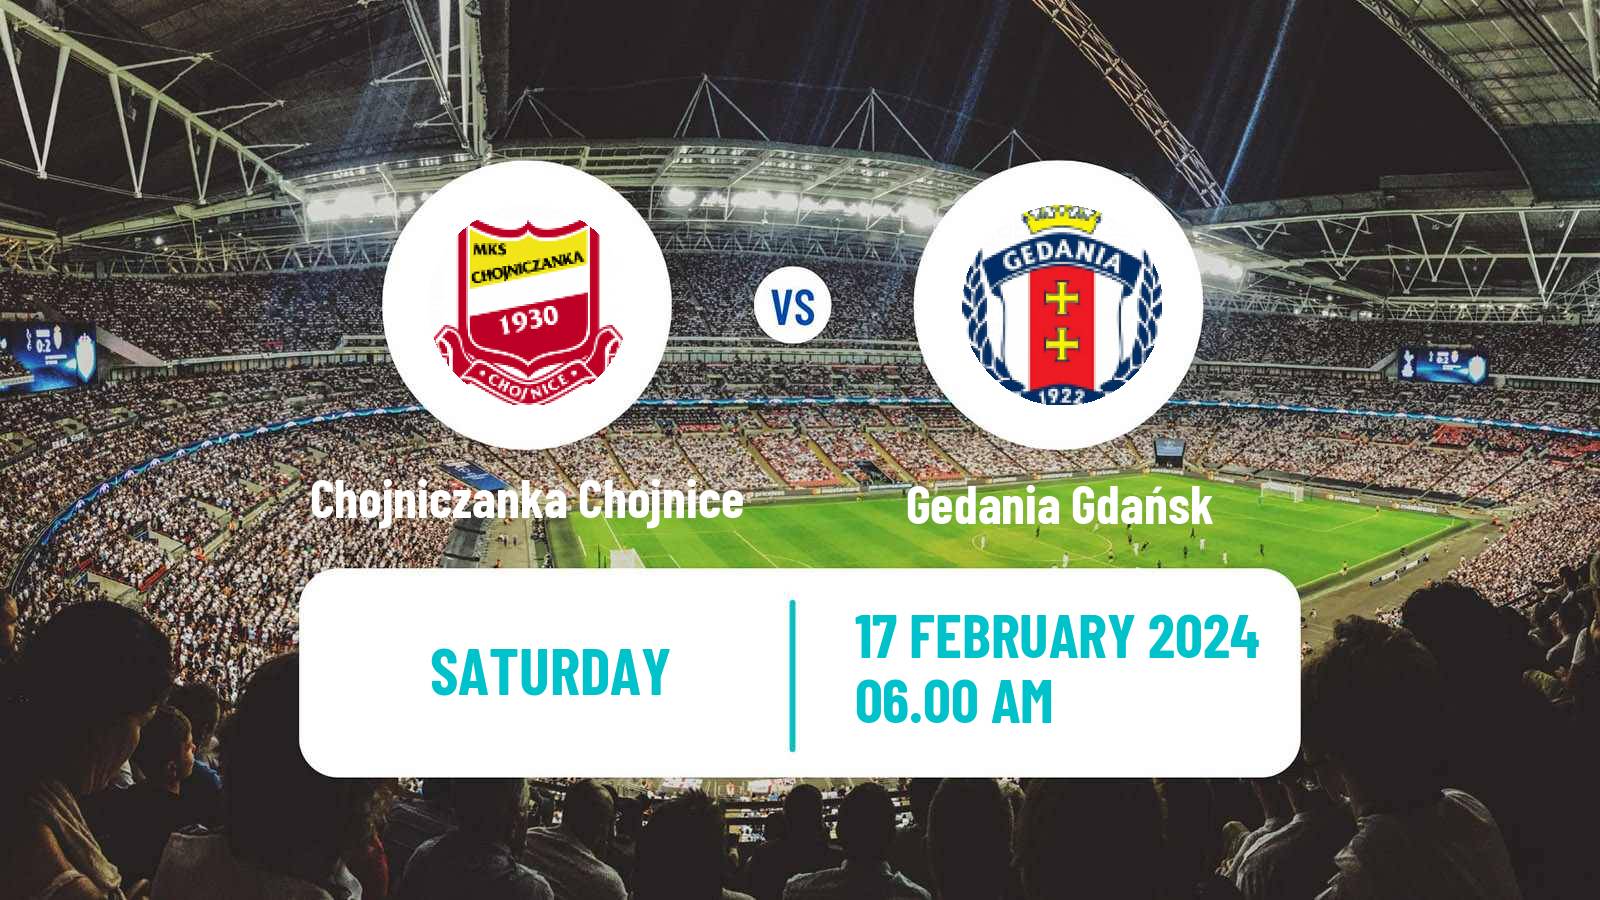 Soccer Club Friendly Chojniczanka Chojnice - Gedania Gdańsk